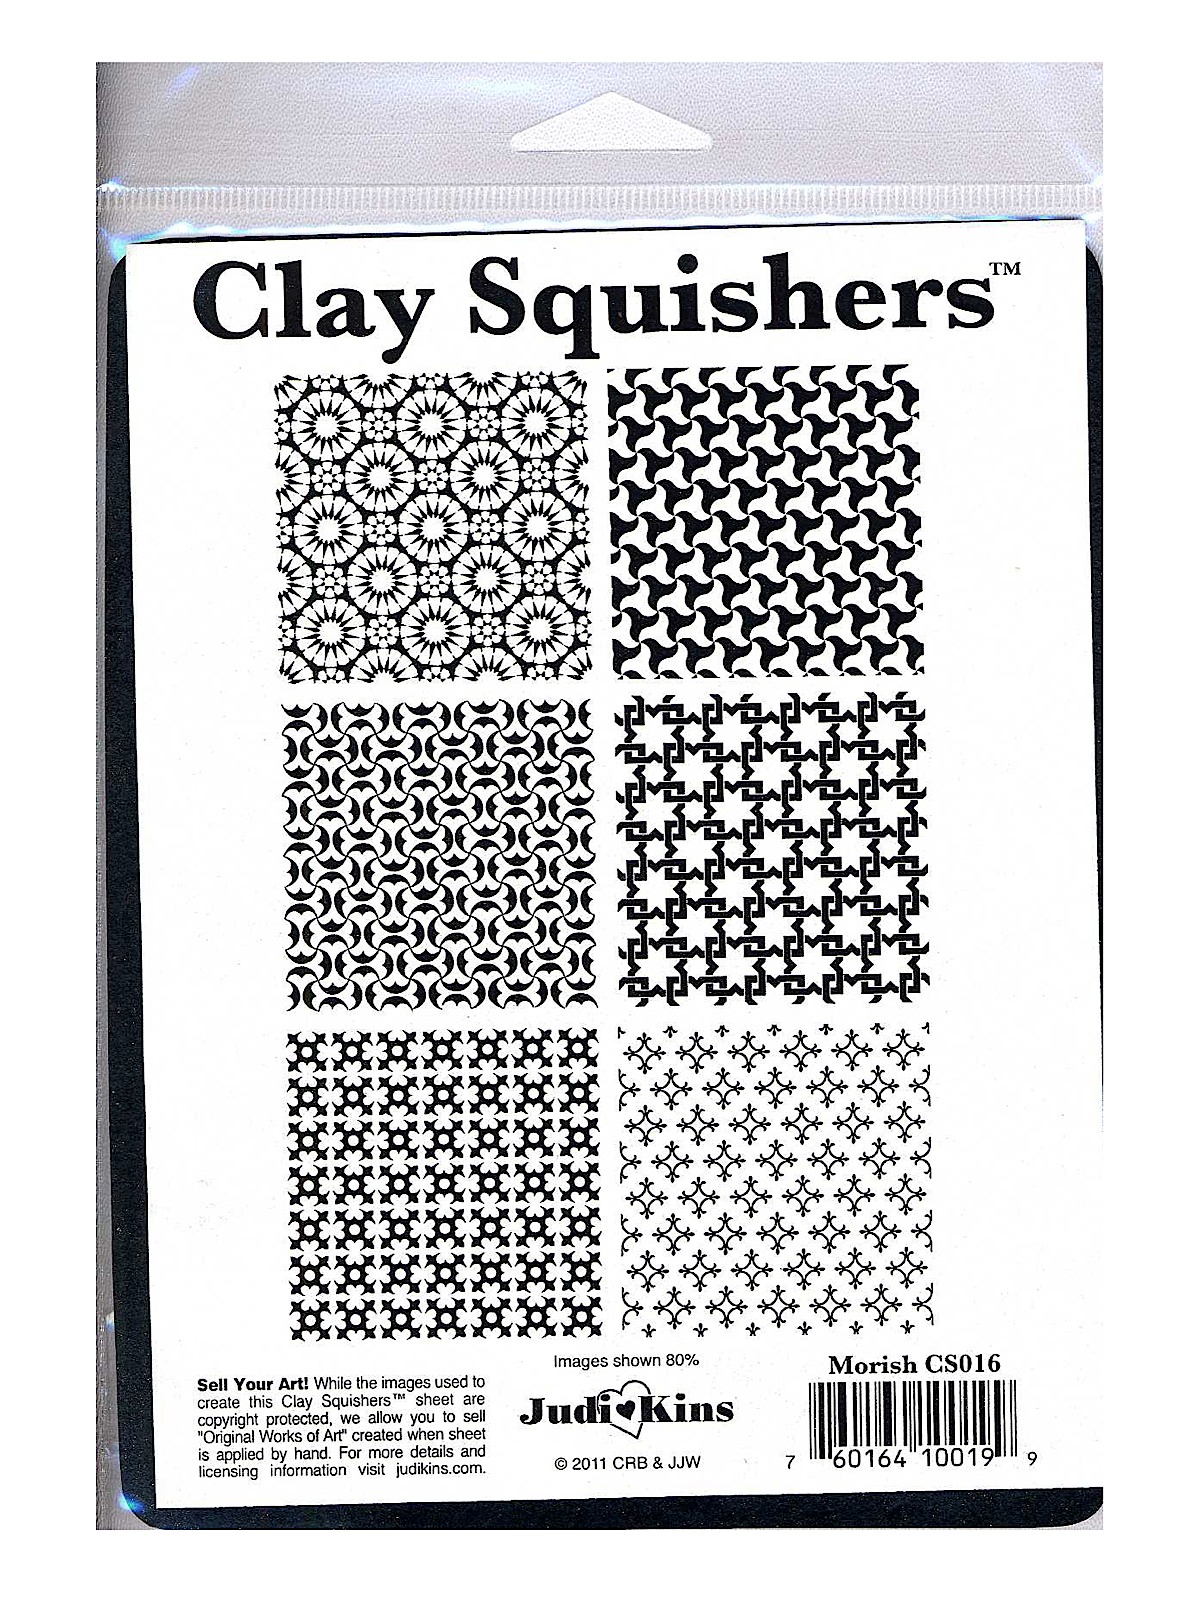 Clay Squishers Moorish